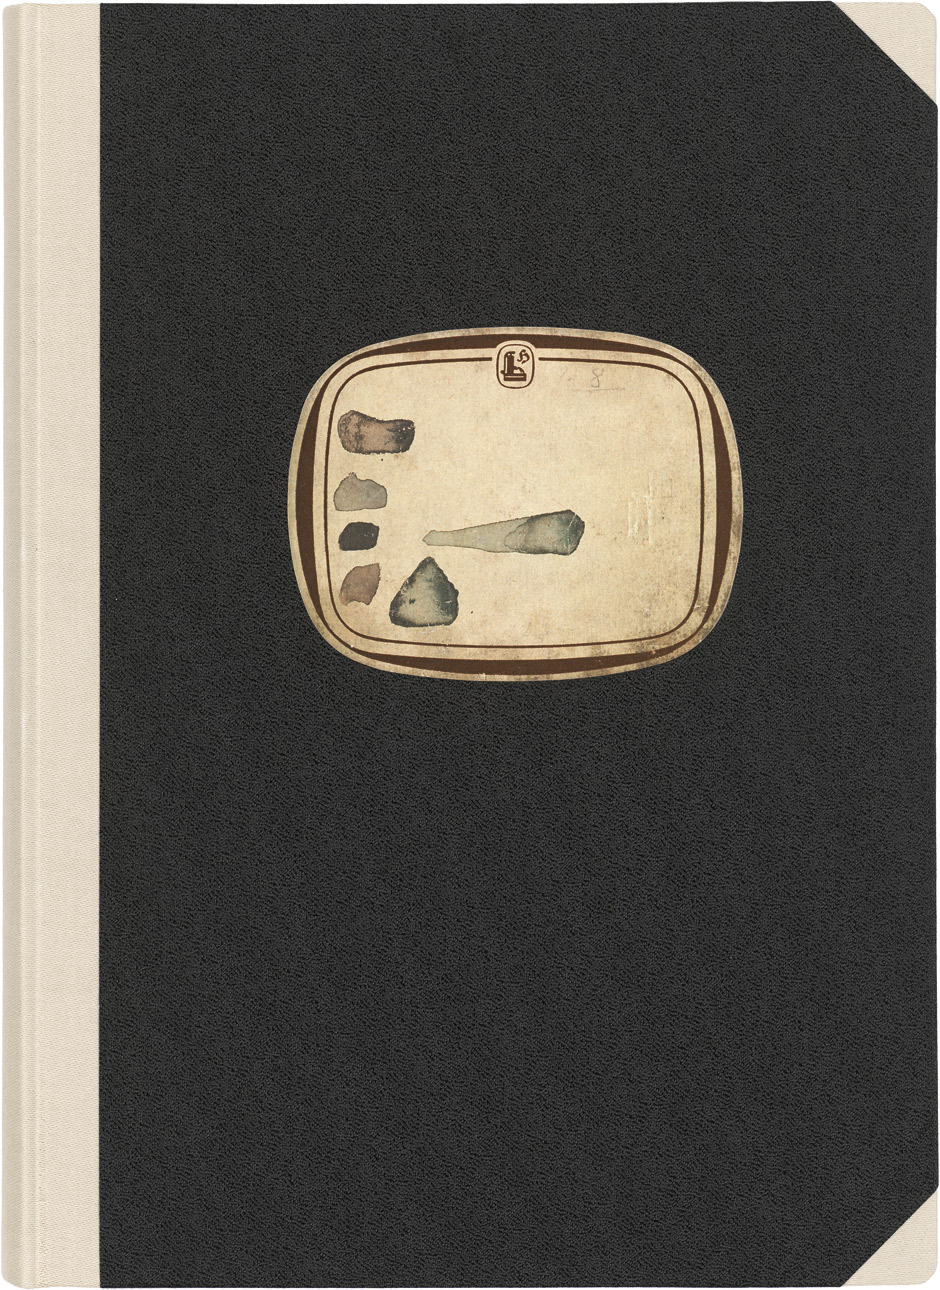 Lot 3019, Auction  115, Beuys, Joseph, 4 Bücher aus: Projekt Westmensch 1958 (Faksimile)